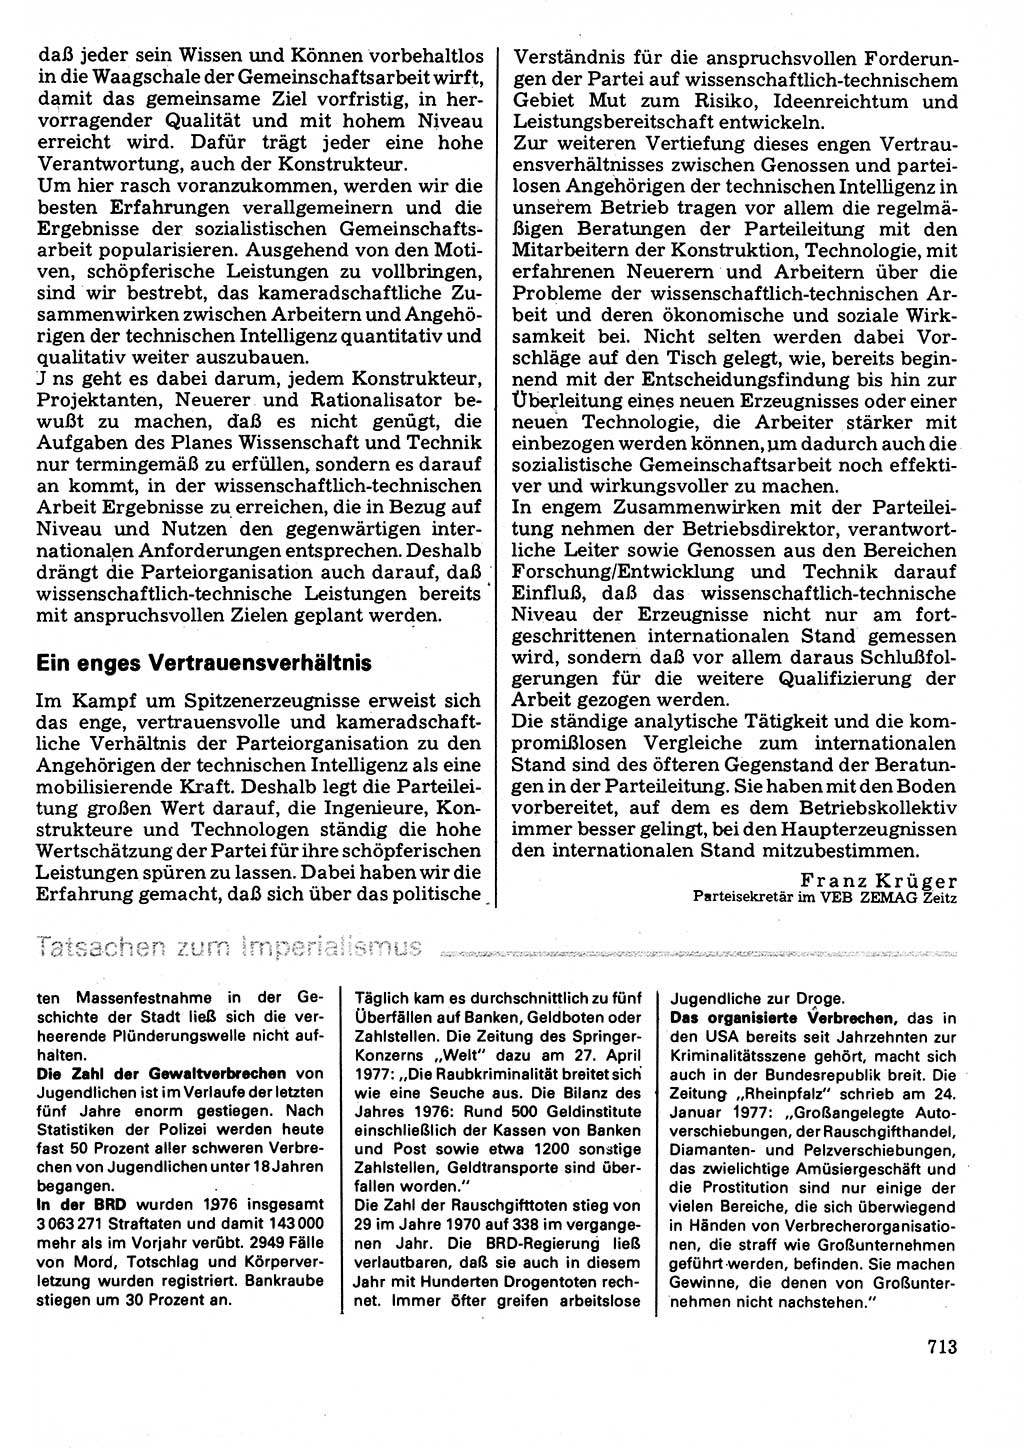 Neuer Weg (NW), Organ des Zentralkomitees (ZK) der SED (Sozialistische Einheitspartei Deutschlands) für Fragen des Parteilebens, 32. Jahrgang [Deutsche Demokratische Republik (DDR)] 1977, Seite 713 (NW ZK SED DDR 1977, S. 713)